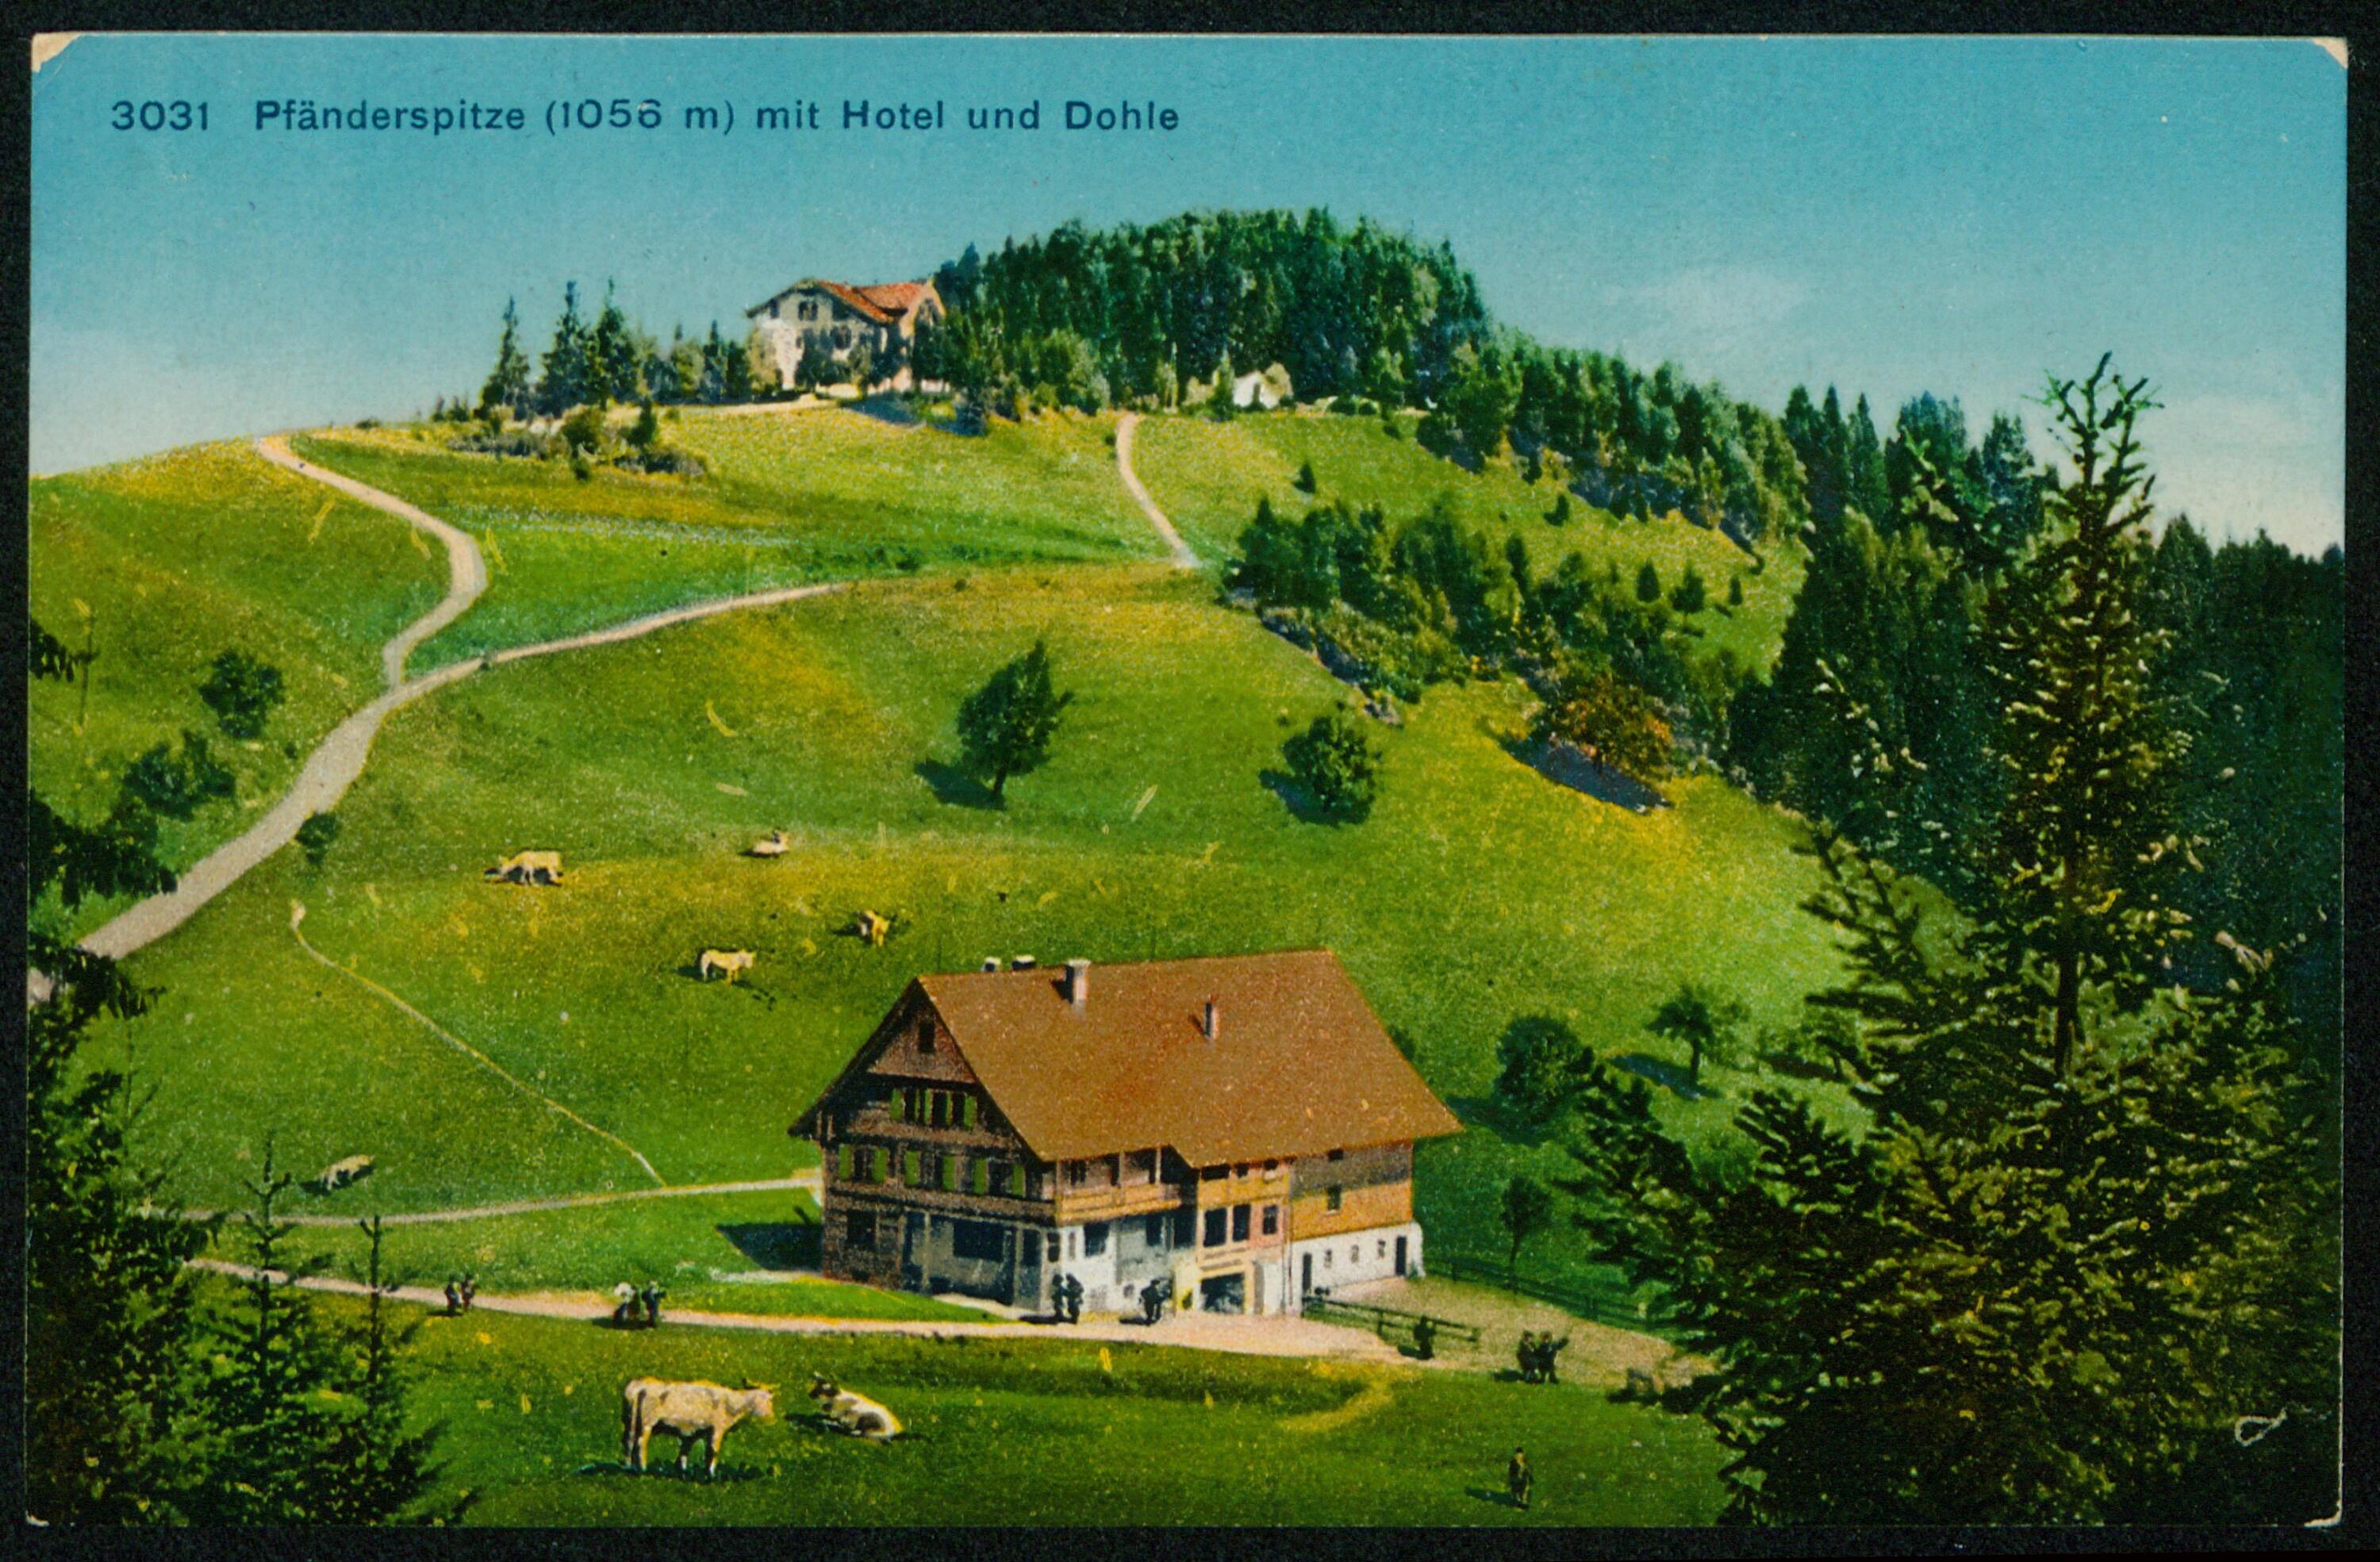 [Lochau] Pfänderspitze (1056 m) mit Hotel und Dohle></div>


    <hr>
    <div class=